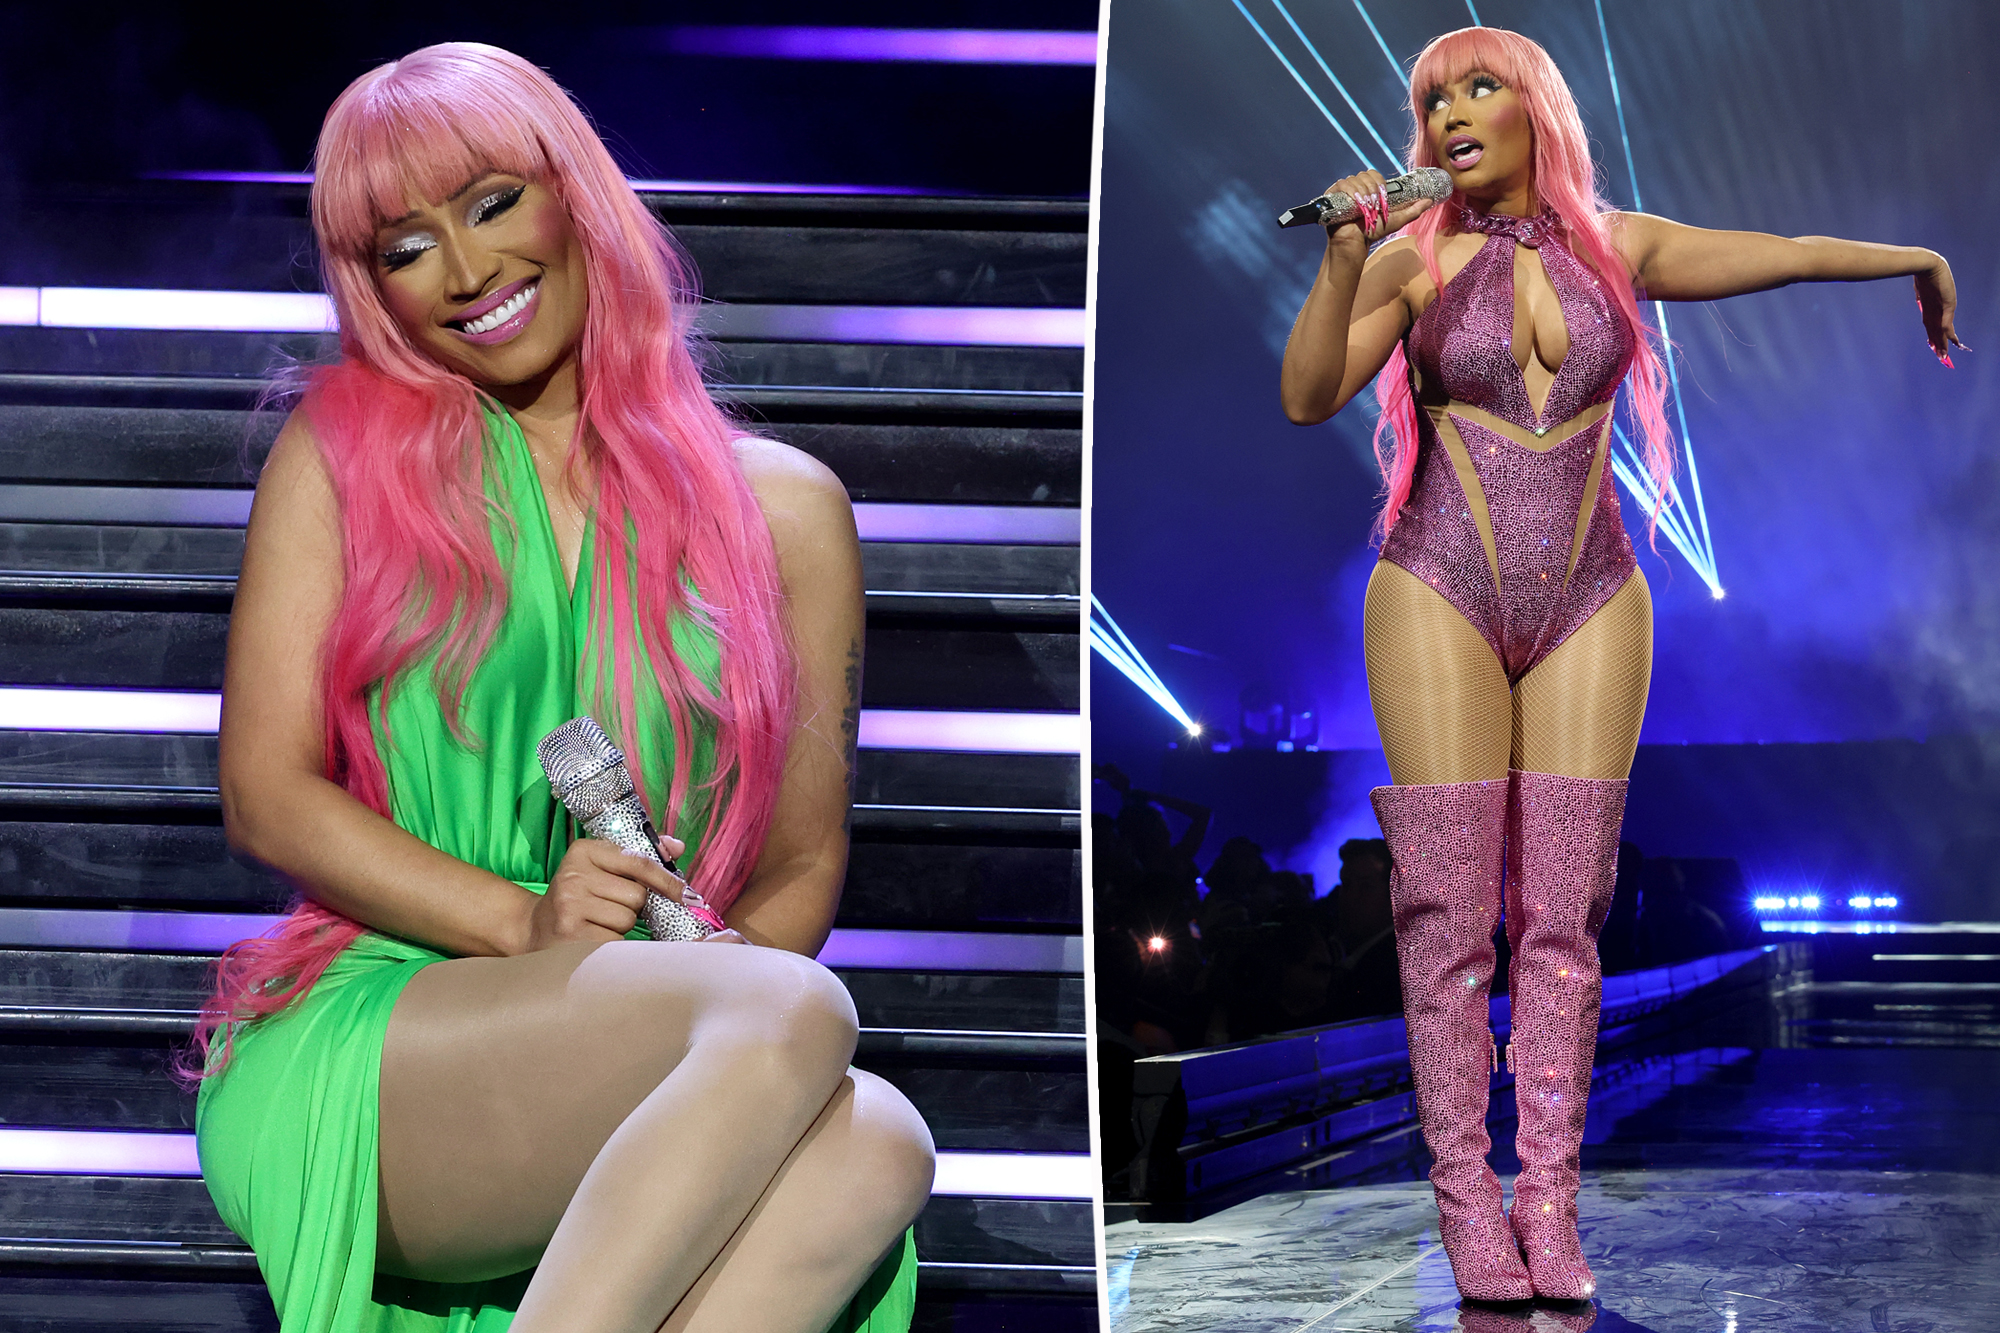 Nicki Minaj Cancels Amsterdam Show Following Drug Arrest